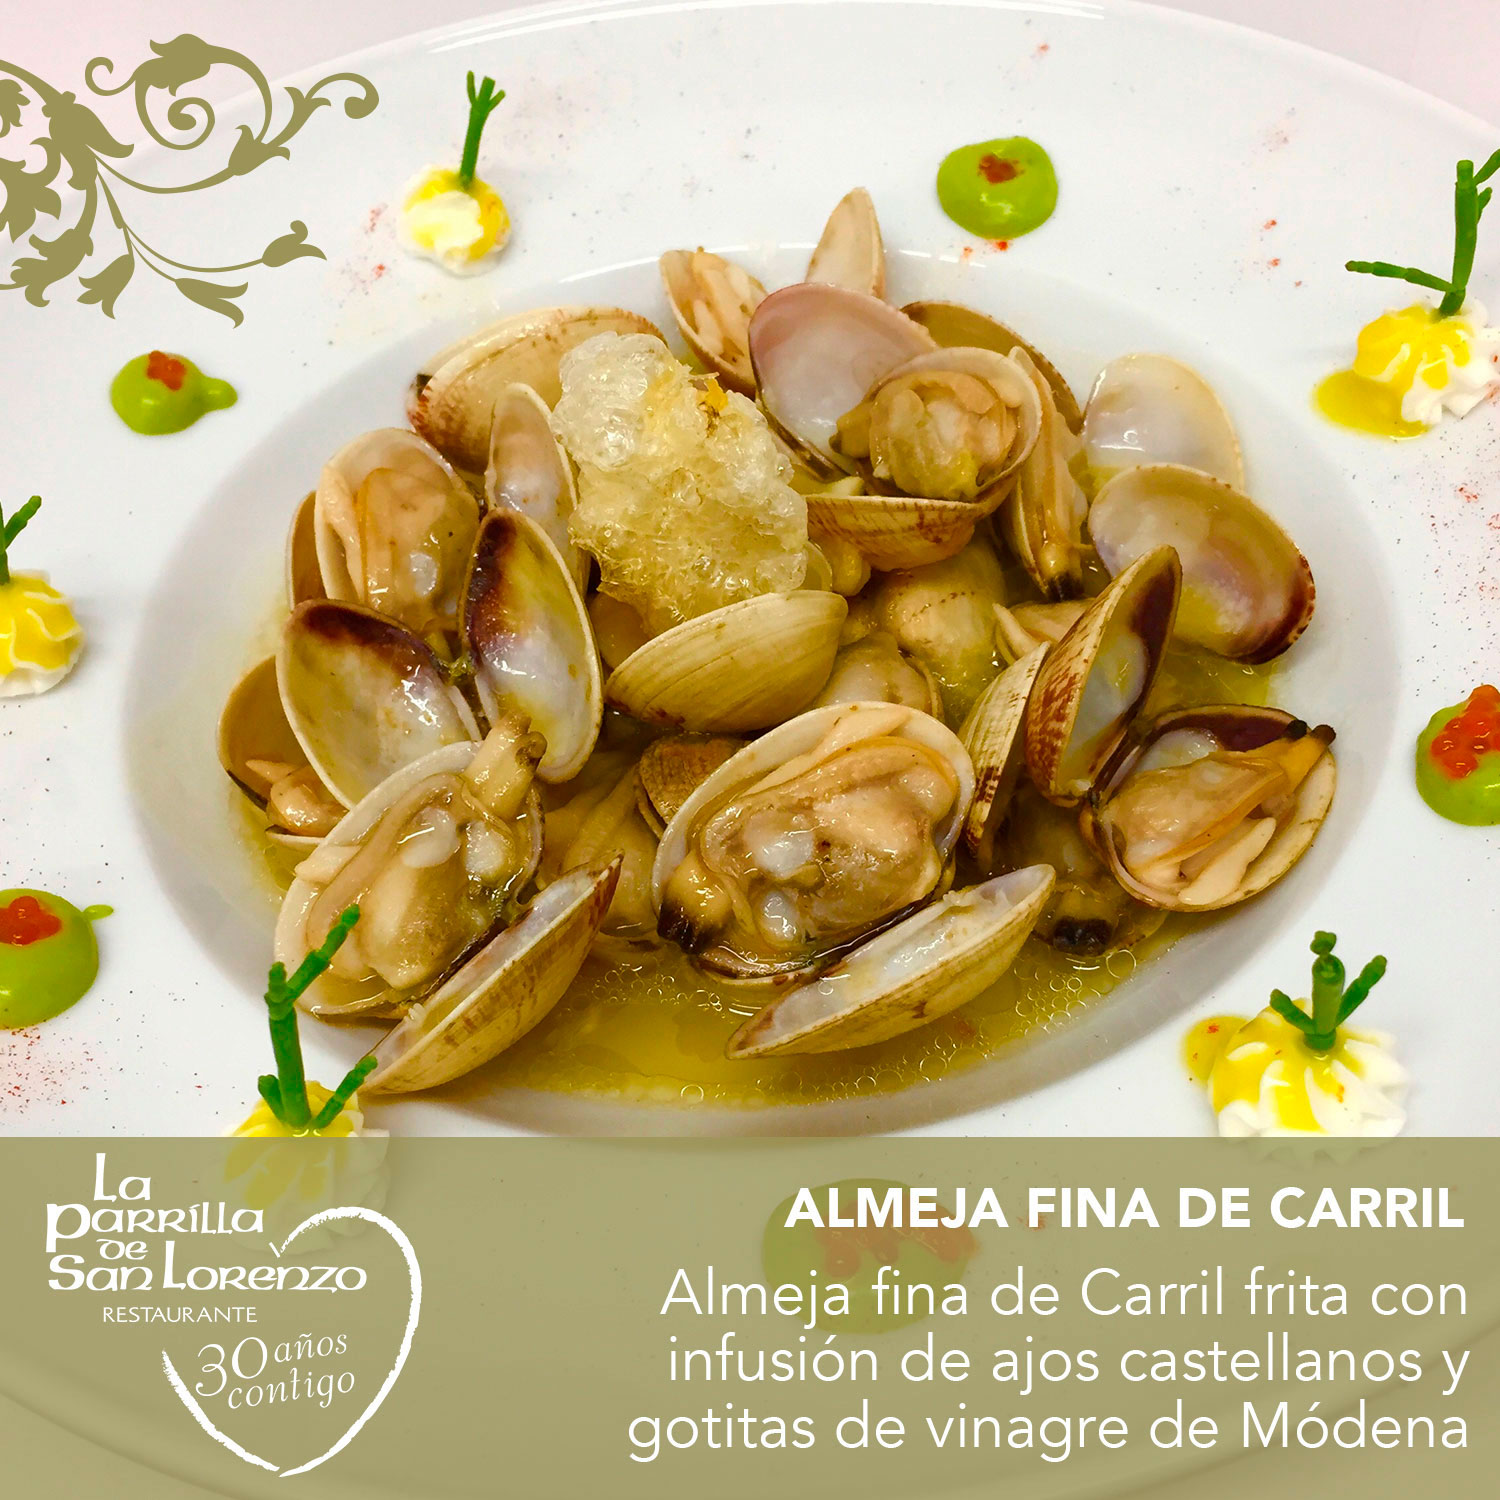 Almeja fina de Carril frita con infusión de ajos castellanos y gotitas de vinagre de Módena